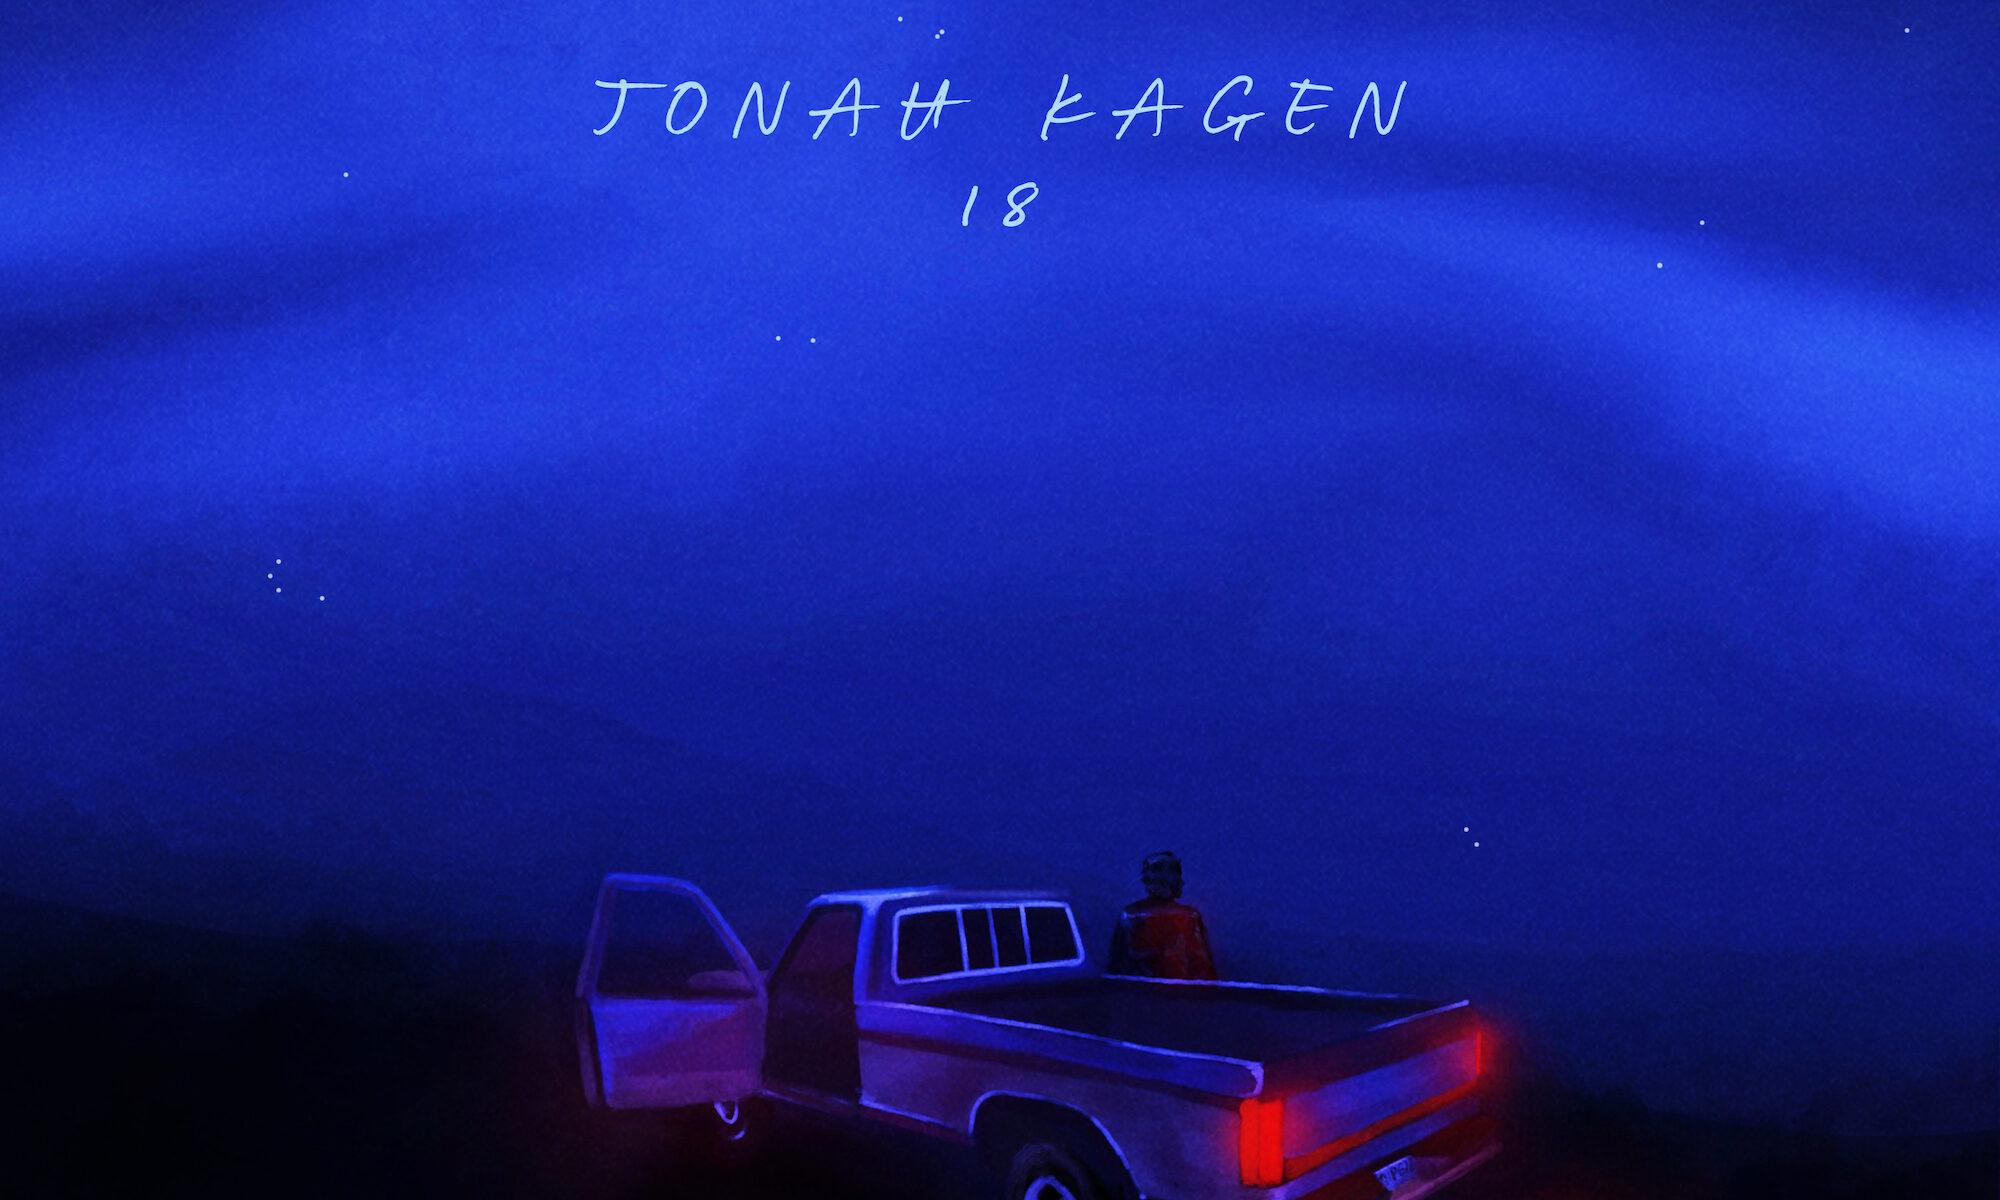 18 by Jonah Kagen